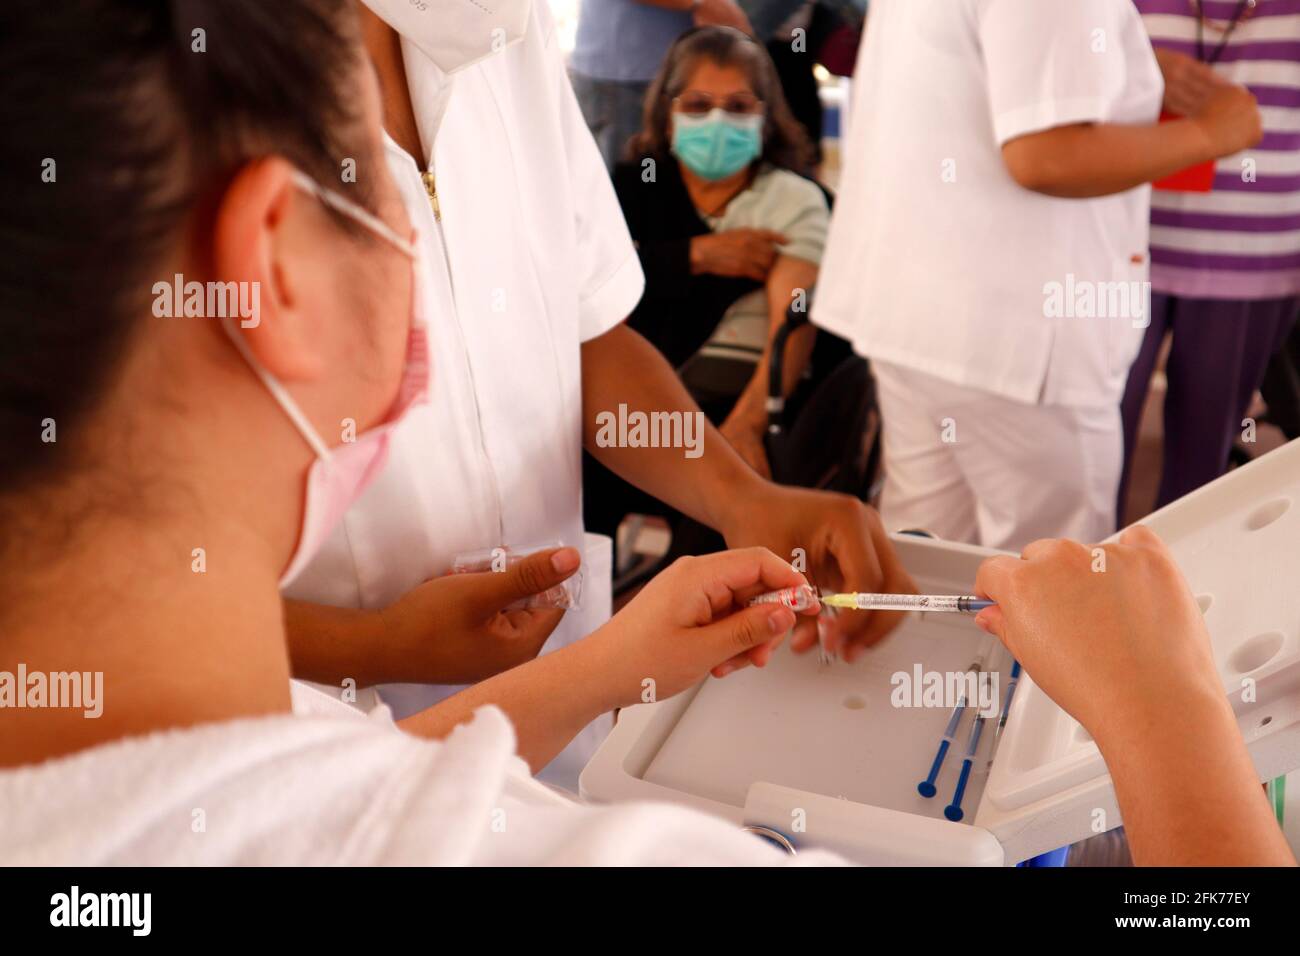 Nicht exklusiv: MEXIKO-STADT, MEXIKO - 28. APRIL: Ein Gesundheitsmitarbeiter bereitet die zweite Dosis des Covid-19-Sputnik-V-Impfstoffs vor, um einem älteren Duri eine Injektion zu verabreichen Stockfoto